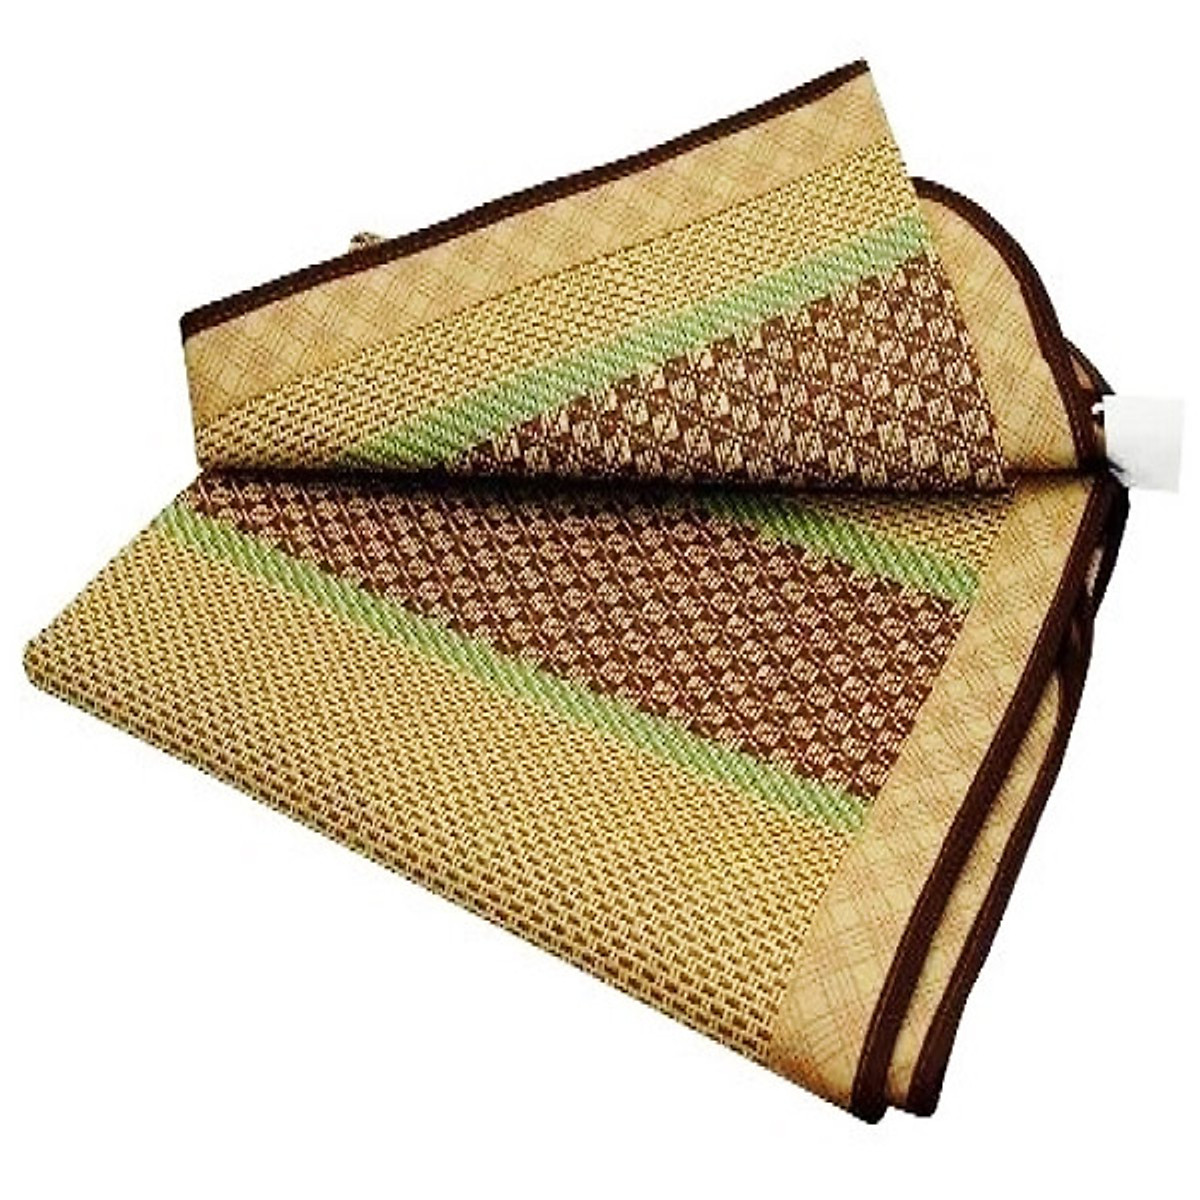 Chiếu điều hòa sợi mây tre đan tổng hợp lót vải không dệt cao cấp hàng xuất khẩu 2 mặt giá rẻ 1m2 1m6 1m8 D Danido